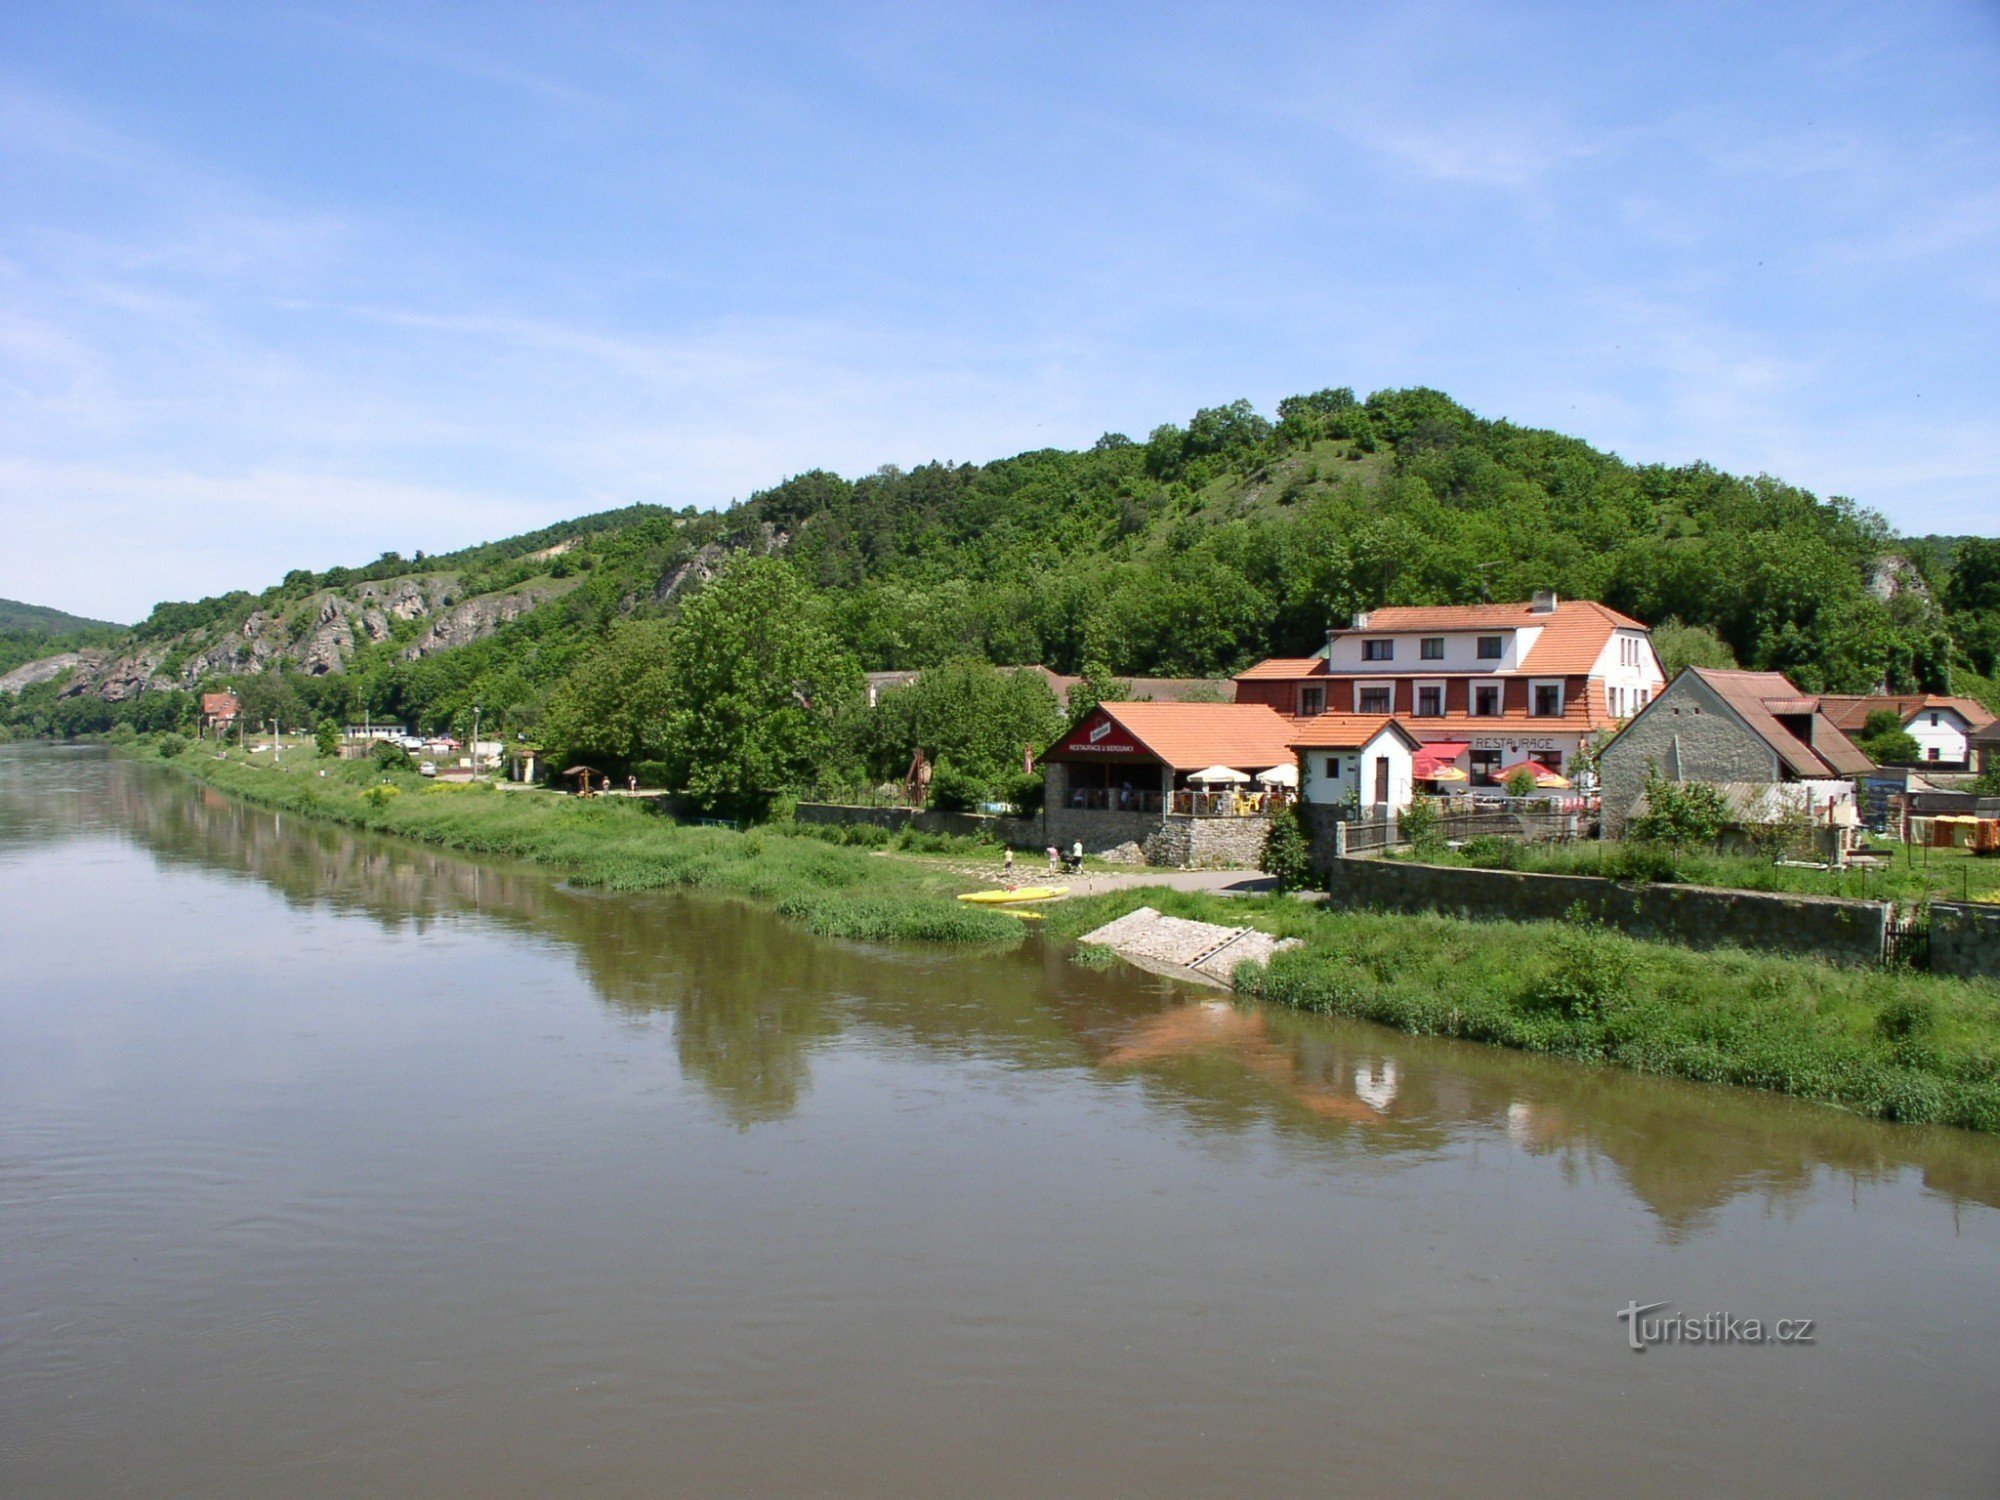 Berounka vanaf de brug in Servië met het U Berounky hotel